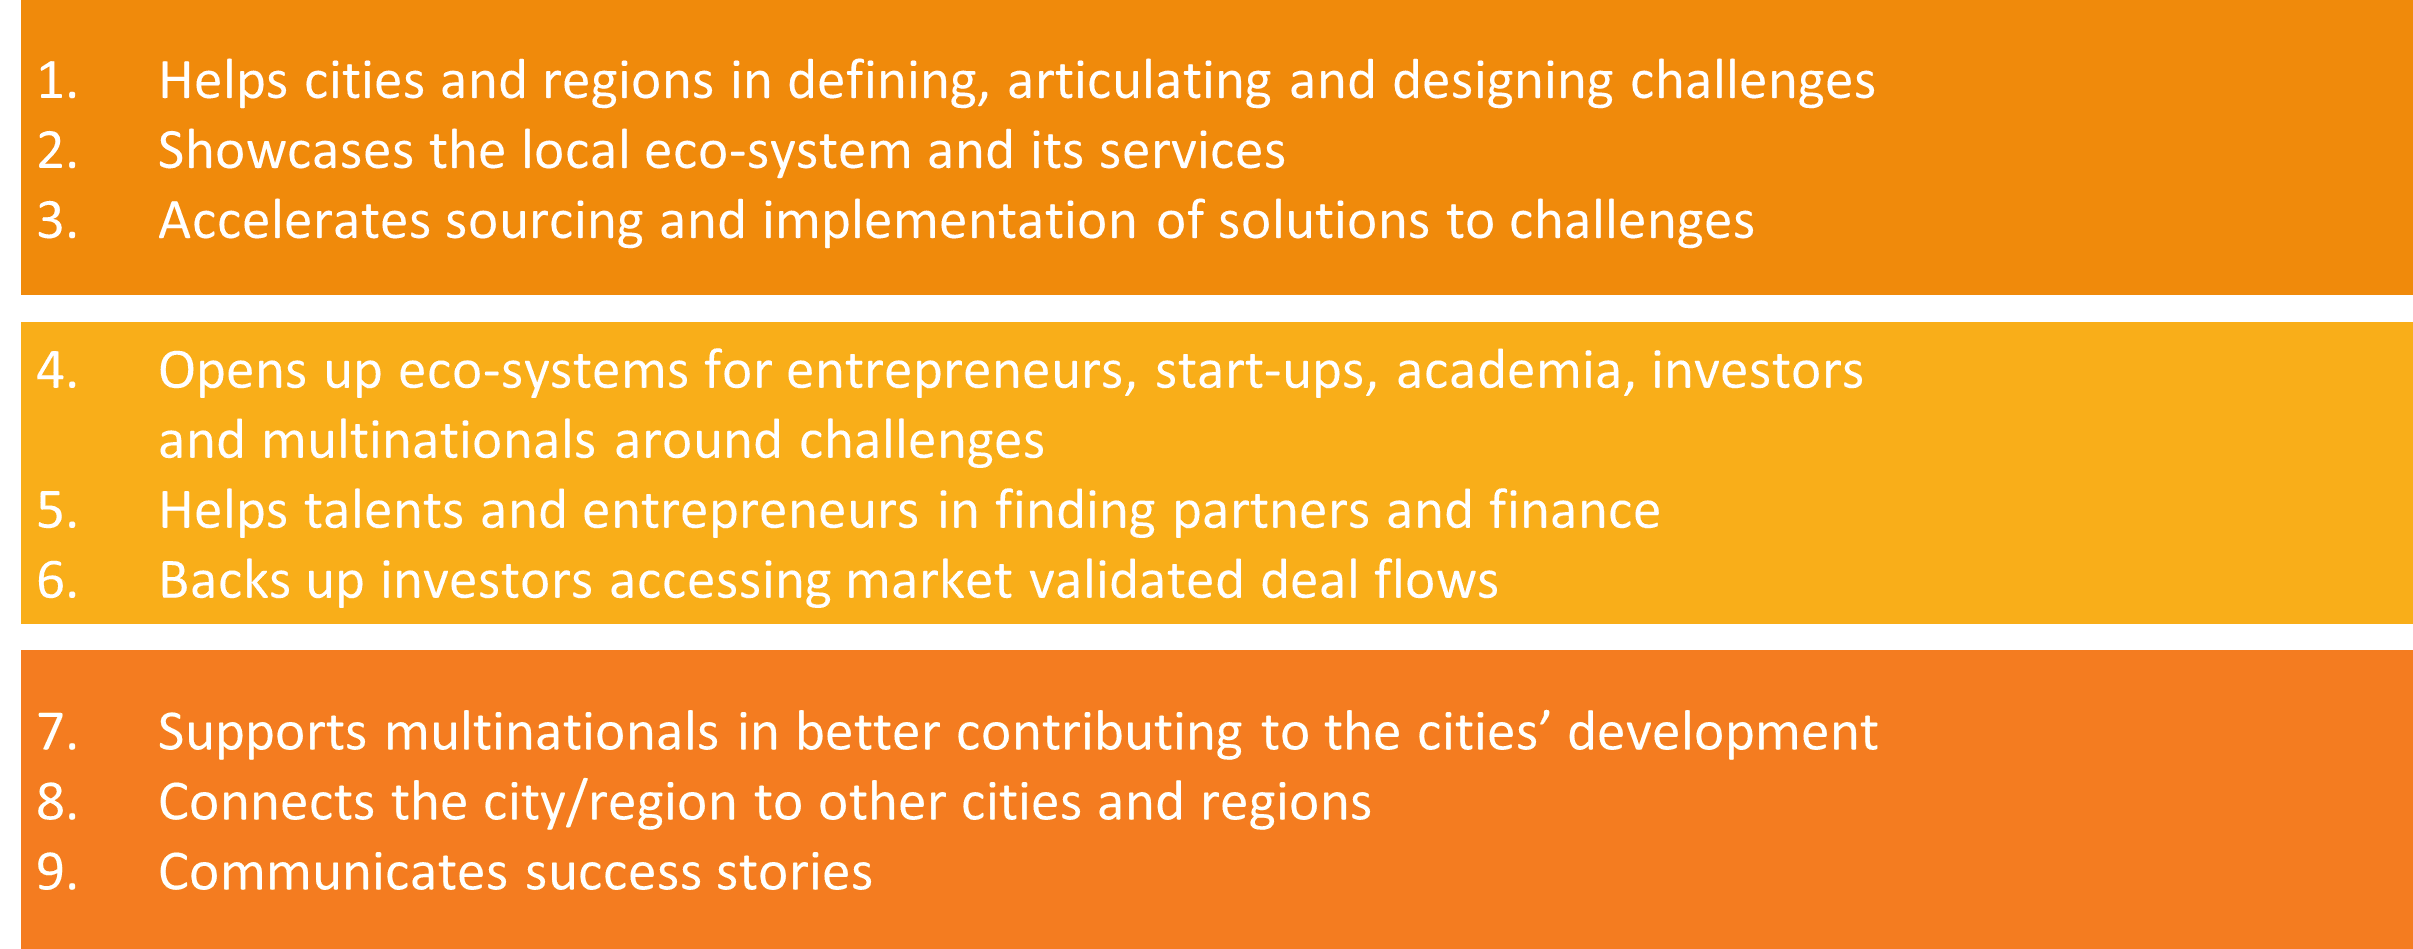 Goals of Global Innovation Platform